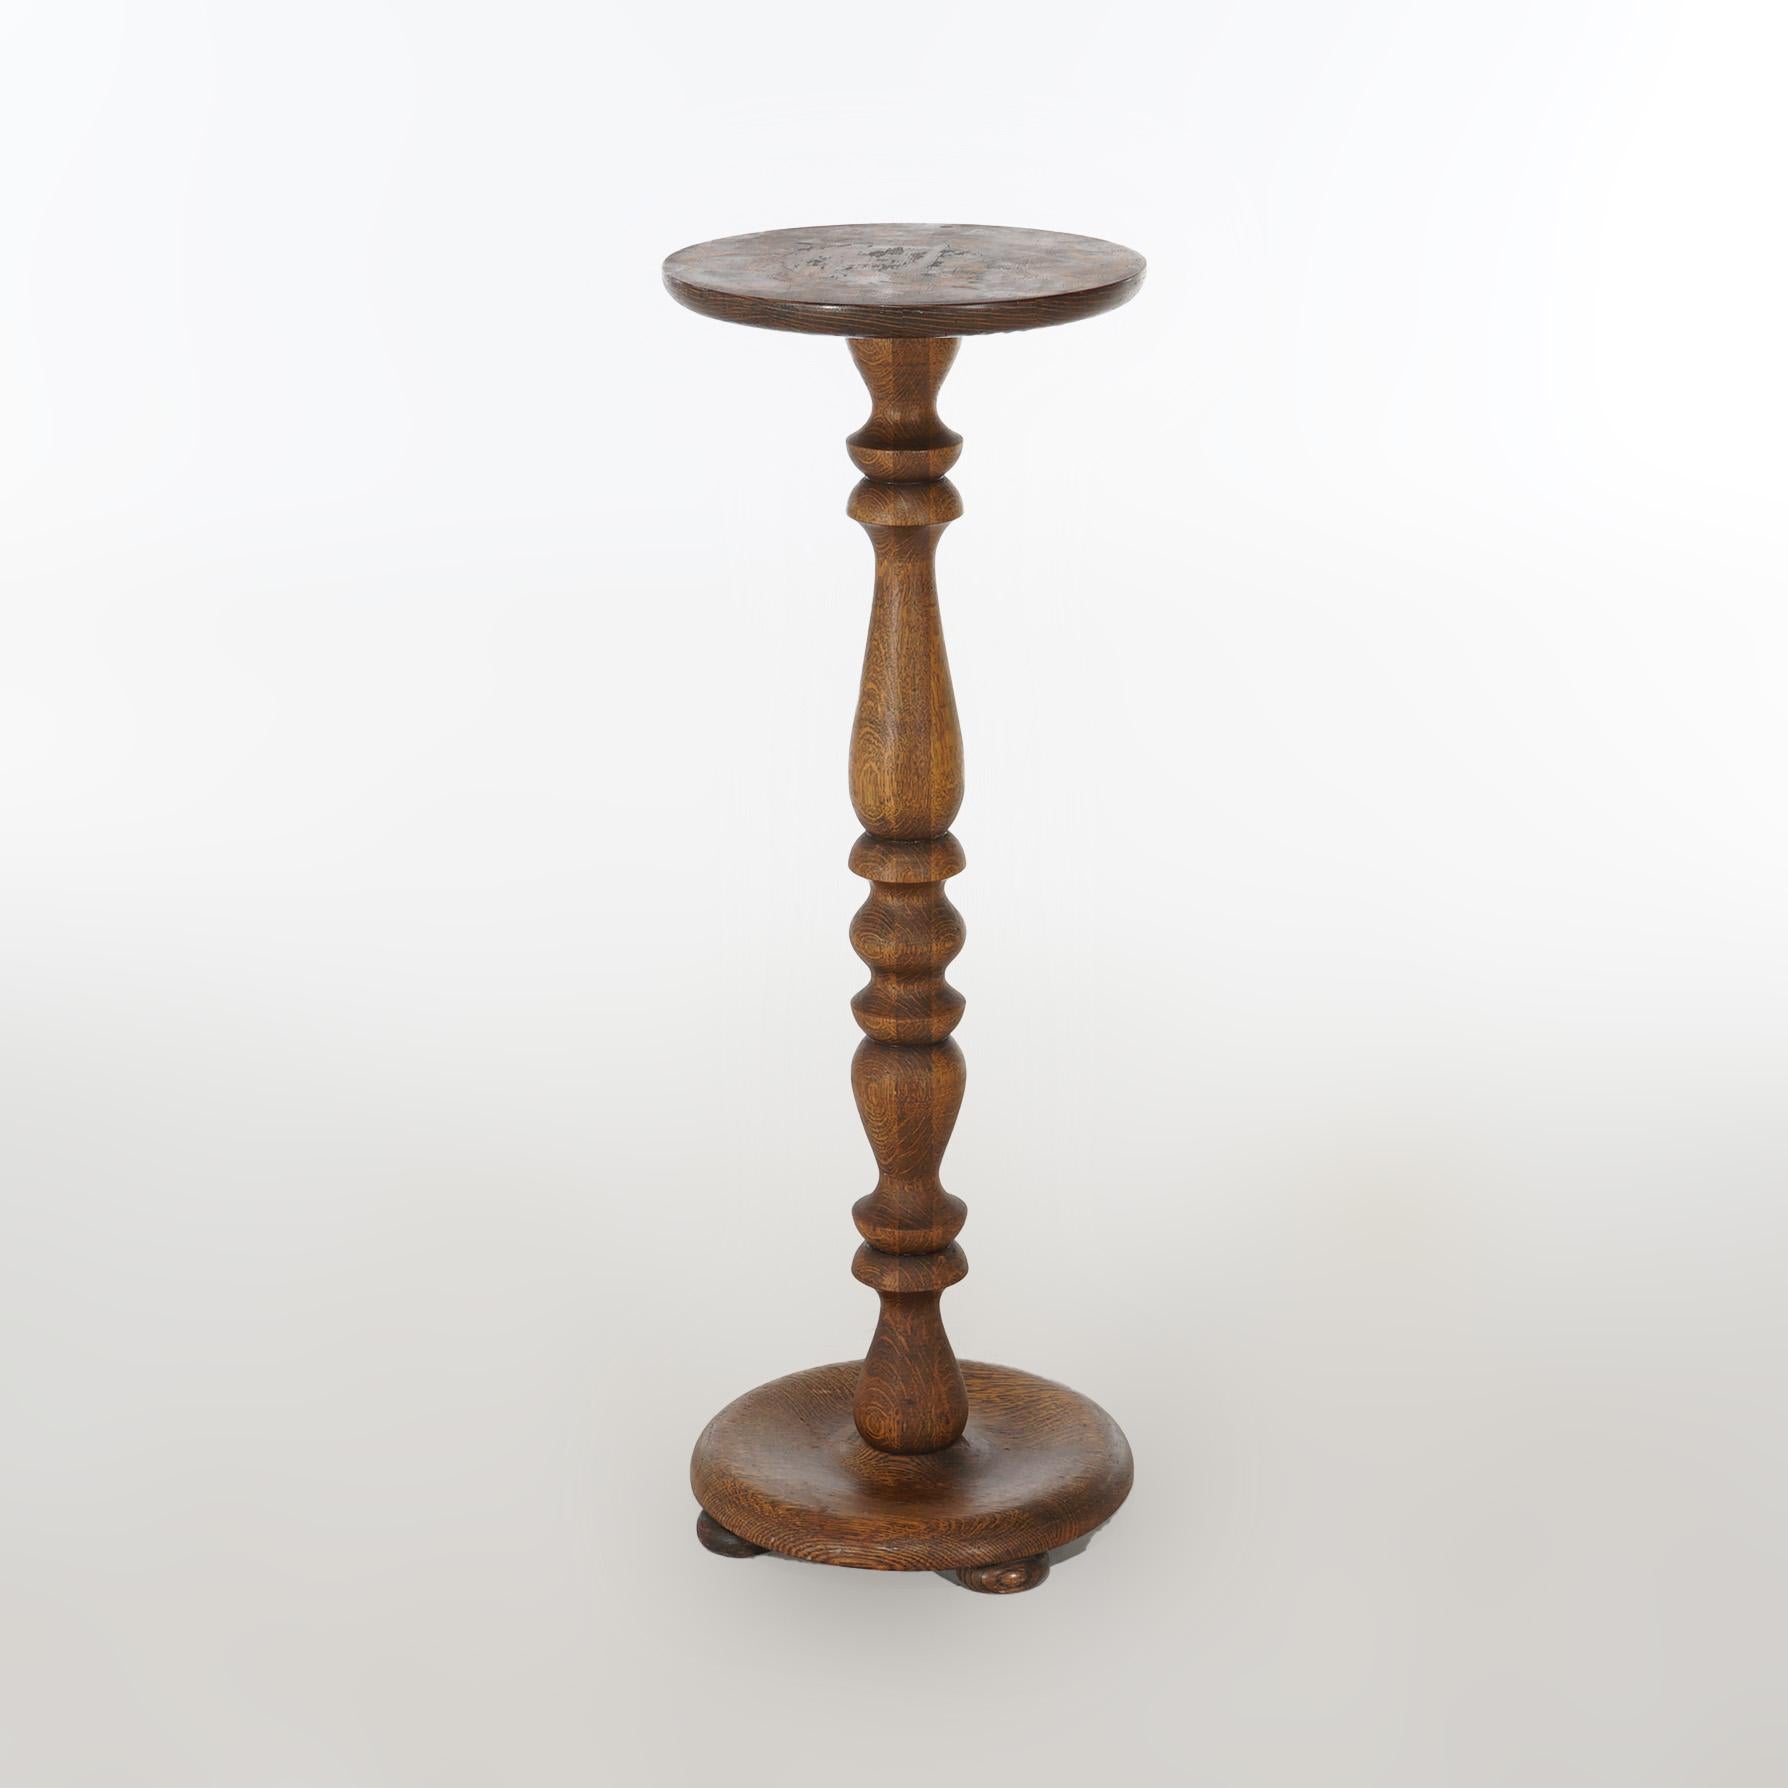 Der antike Arts & Crafts-Pflanzenständer ist aus Eichenholz gefertigt und hat eine runde  Auslage über gedrehter balustradenförmiger Säule auf rundem Sockel, um 1910

Maße - 34,5 